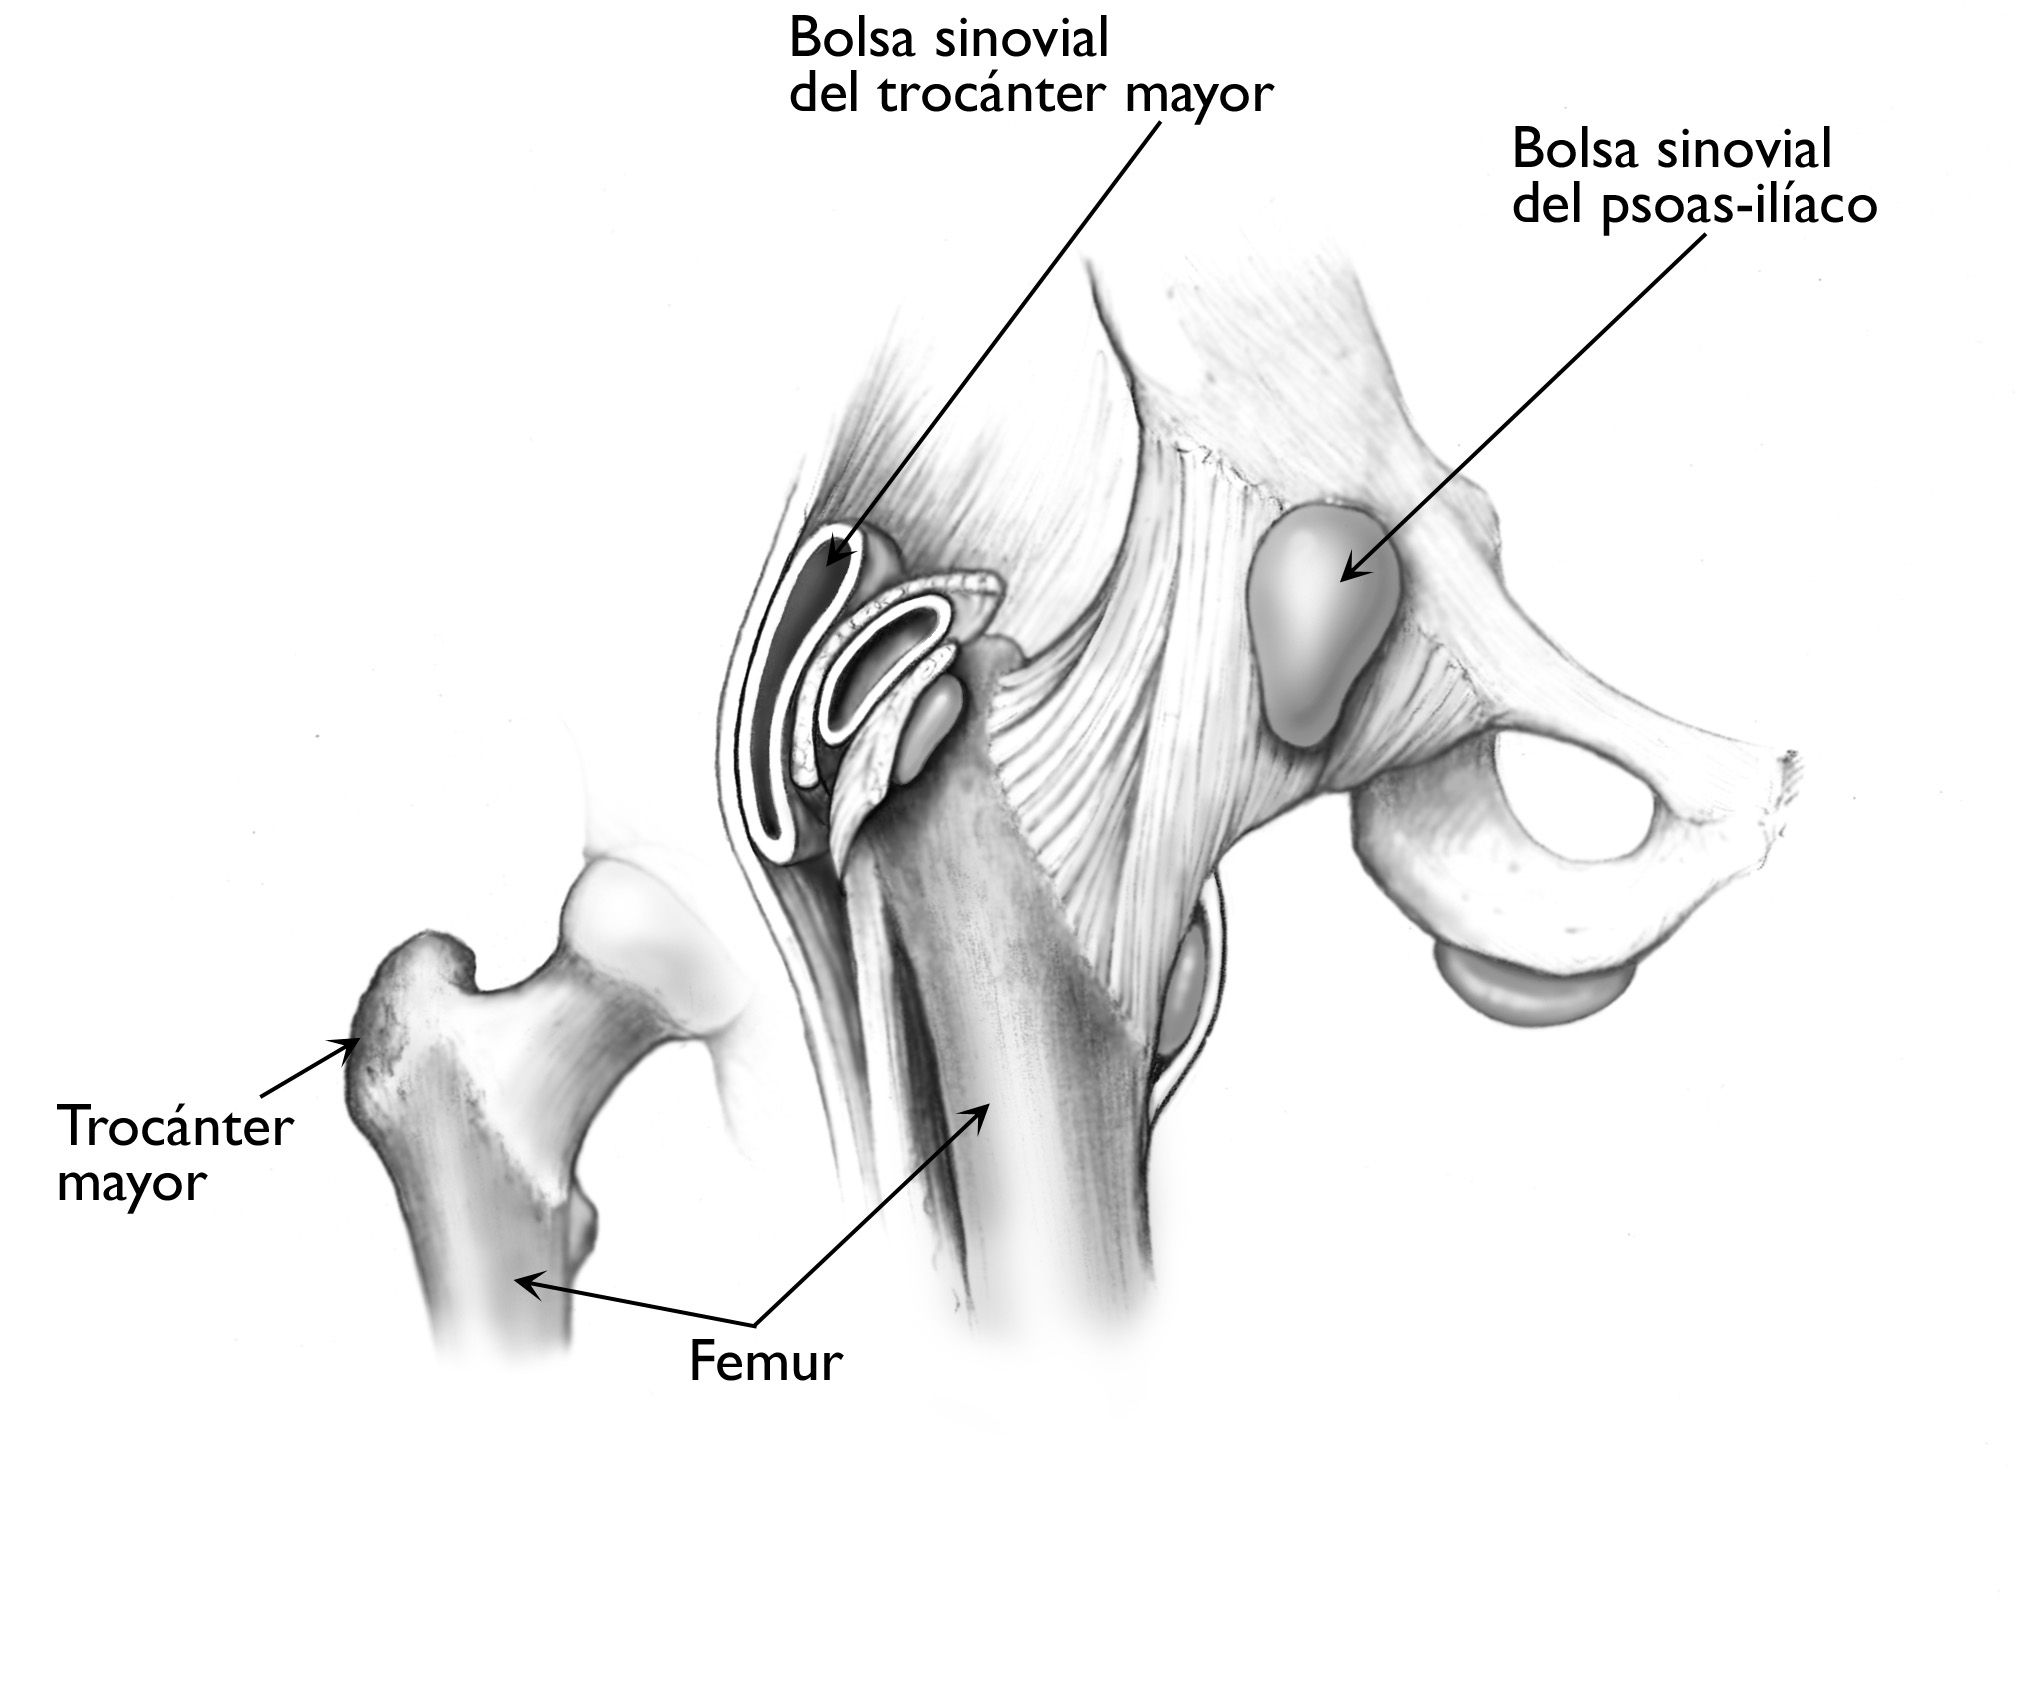 Lo más frecuente es que la bursitis de cadera involucre a la bolsa que cubre el trocánter mayor del fémur, aunque la bolsa del psoas-ilíaco también puede inflamarse. 